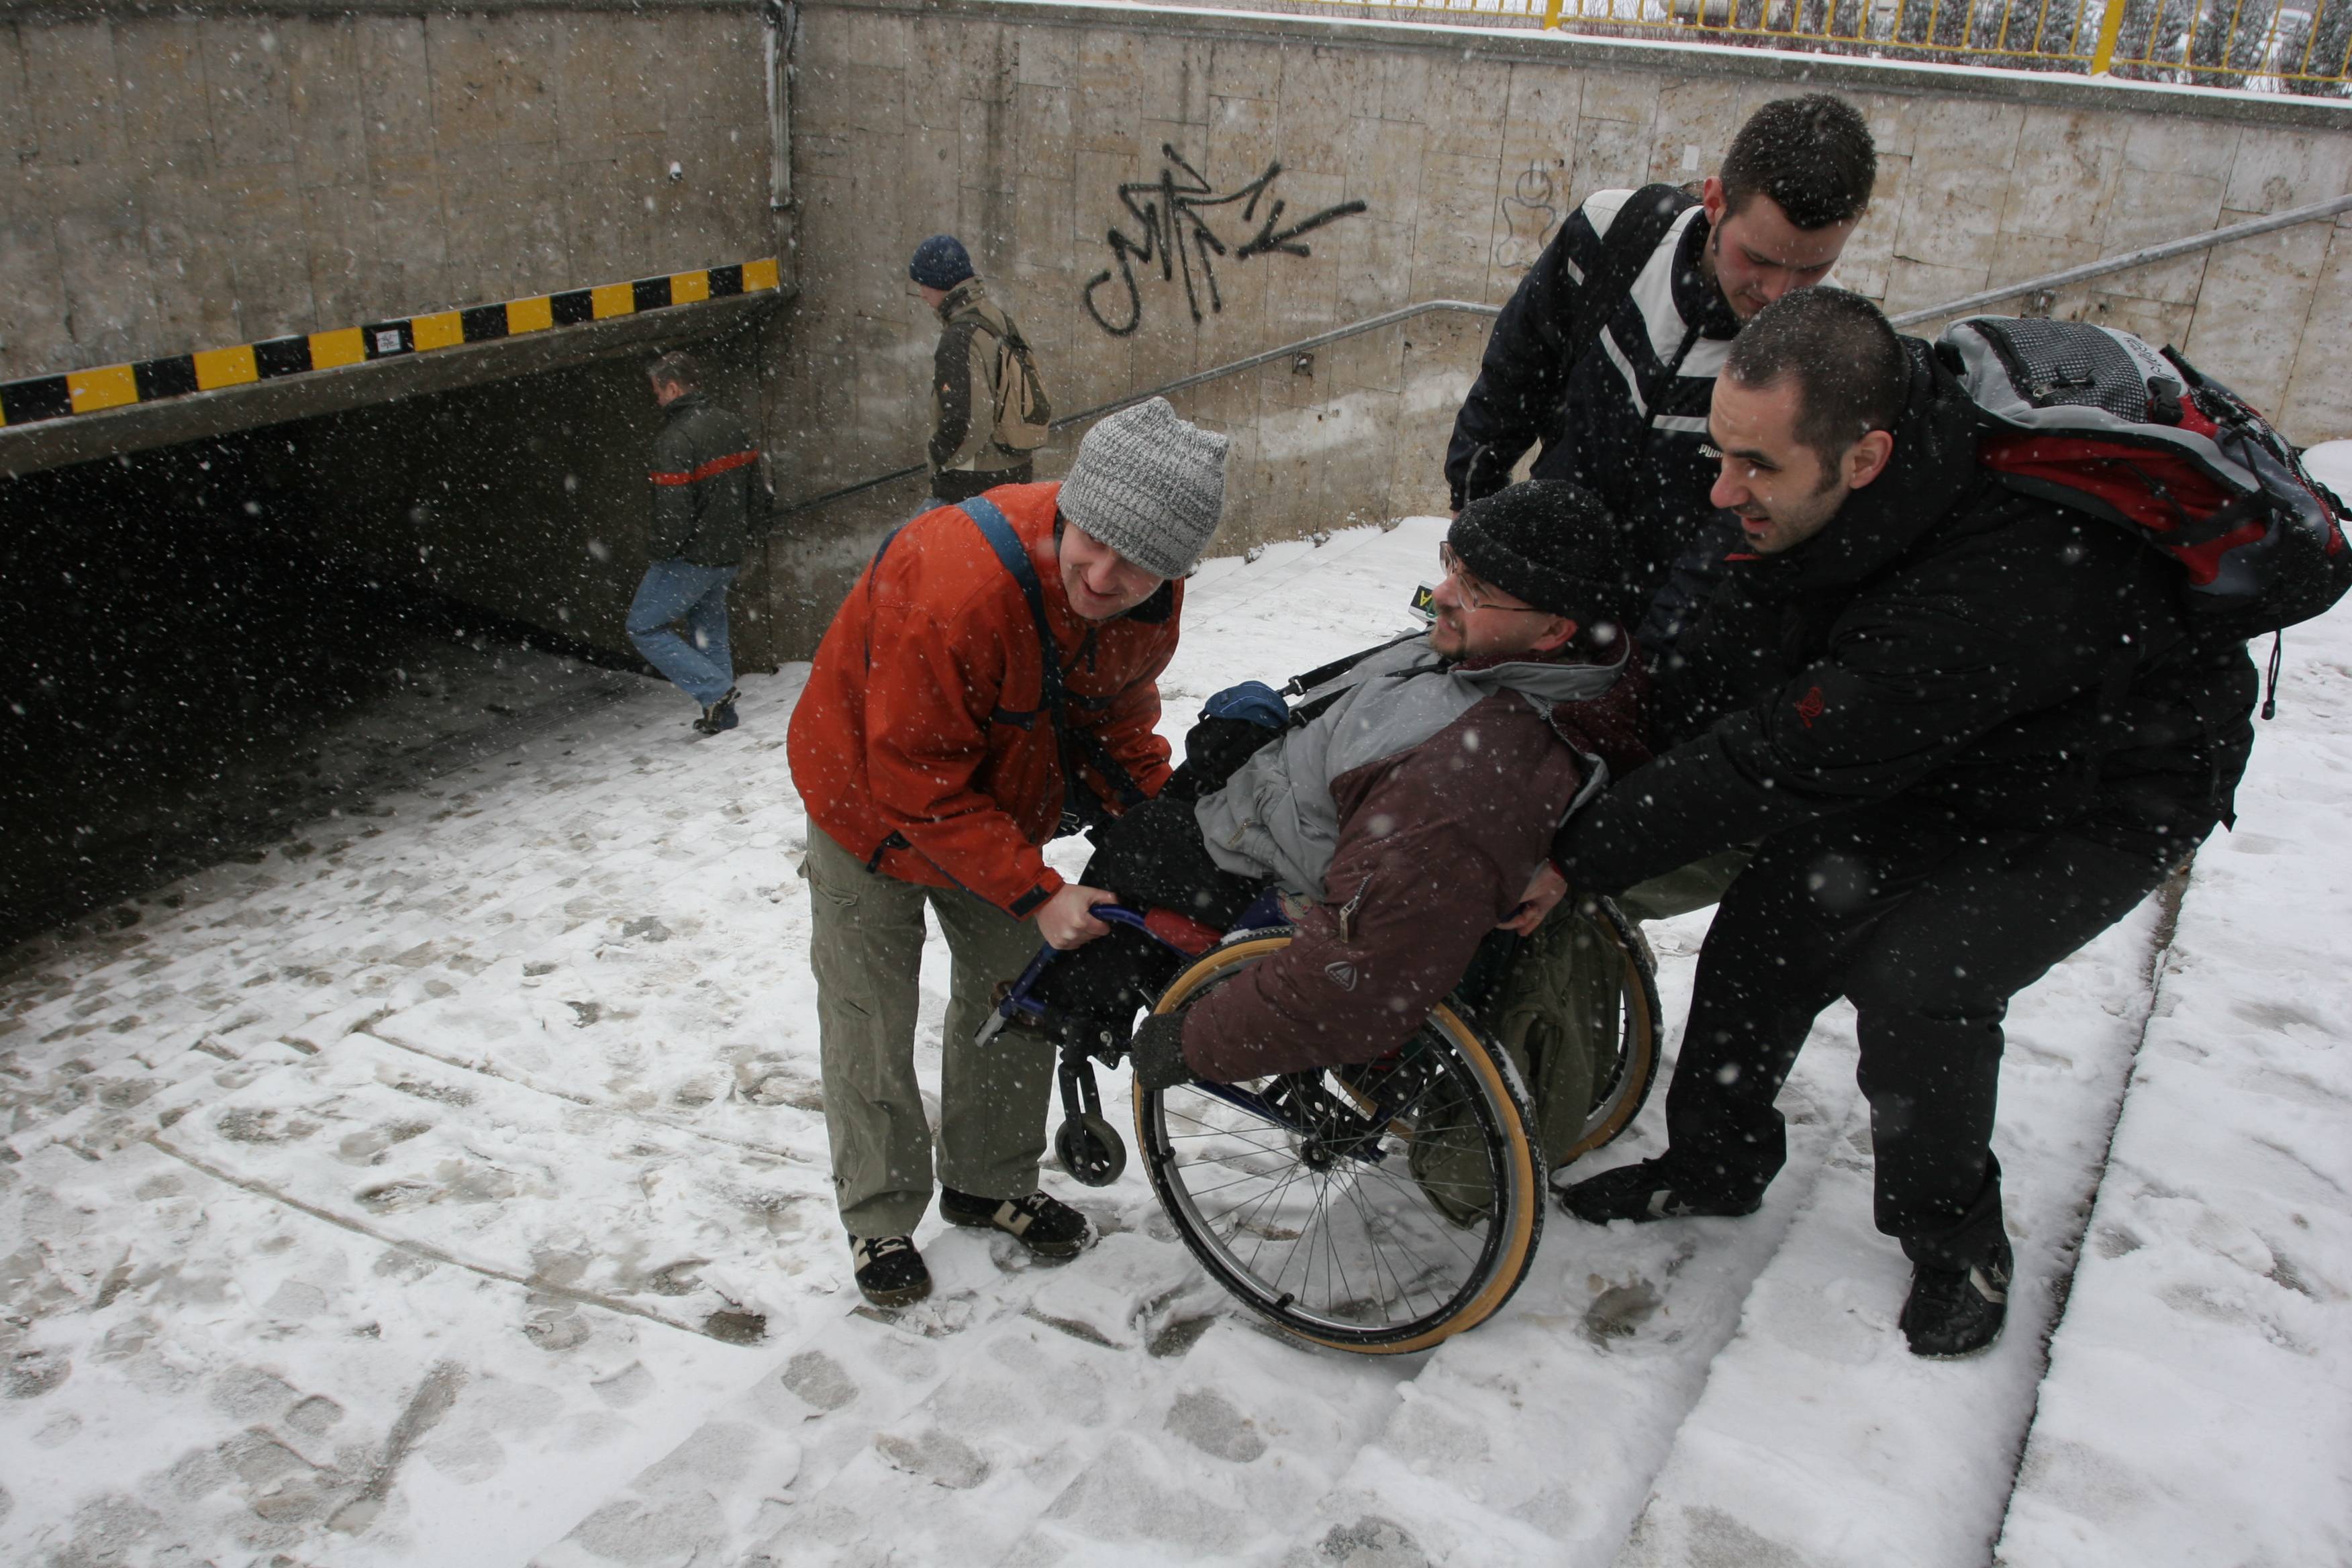 Trzej mężczyźni znoszą człowieka na wózku inwalidzkim po ośnieżonych schodach